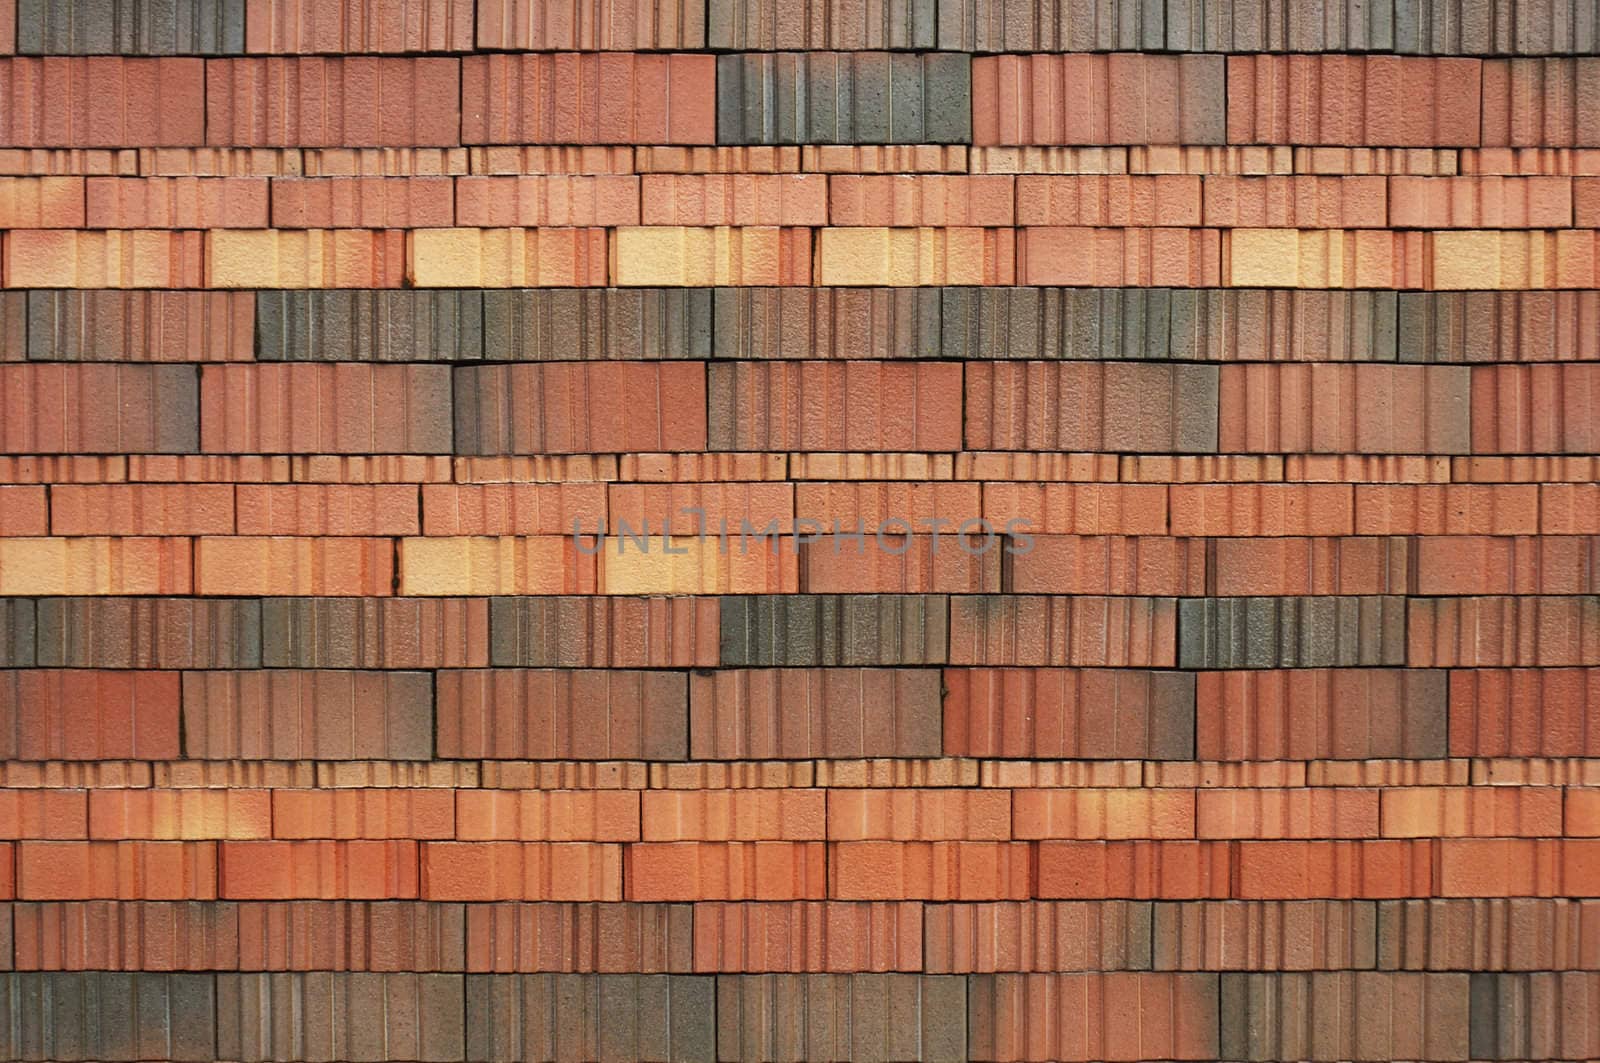 Tiling pattern by Bateleur